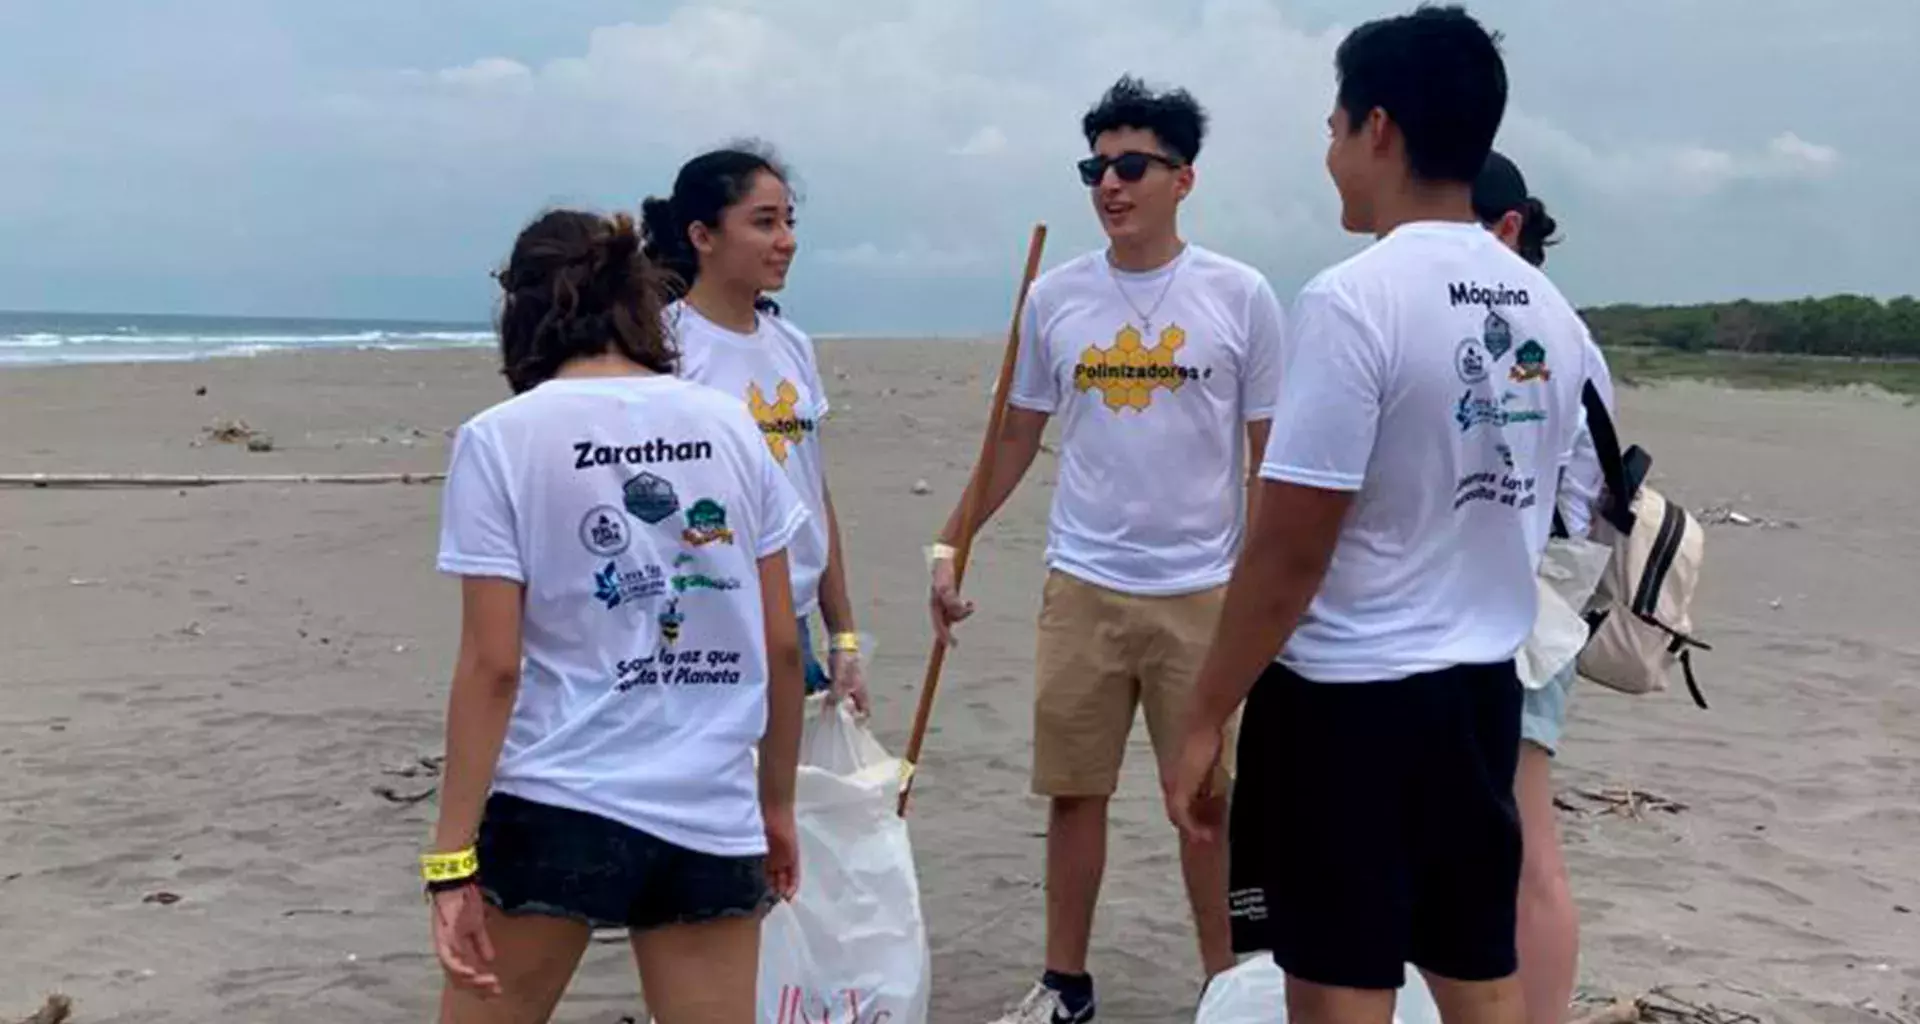 Polinizadores limpiando Puerto Arista en Chiapas